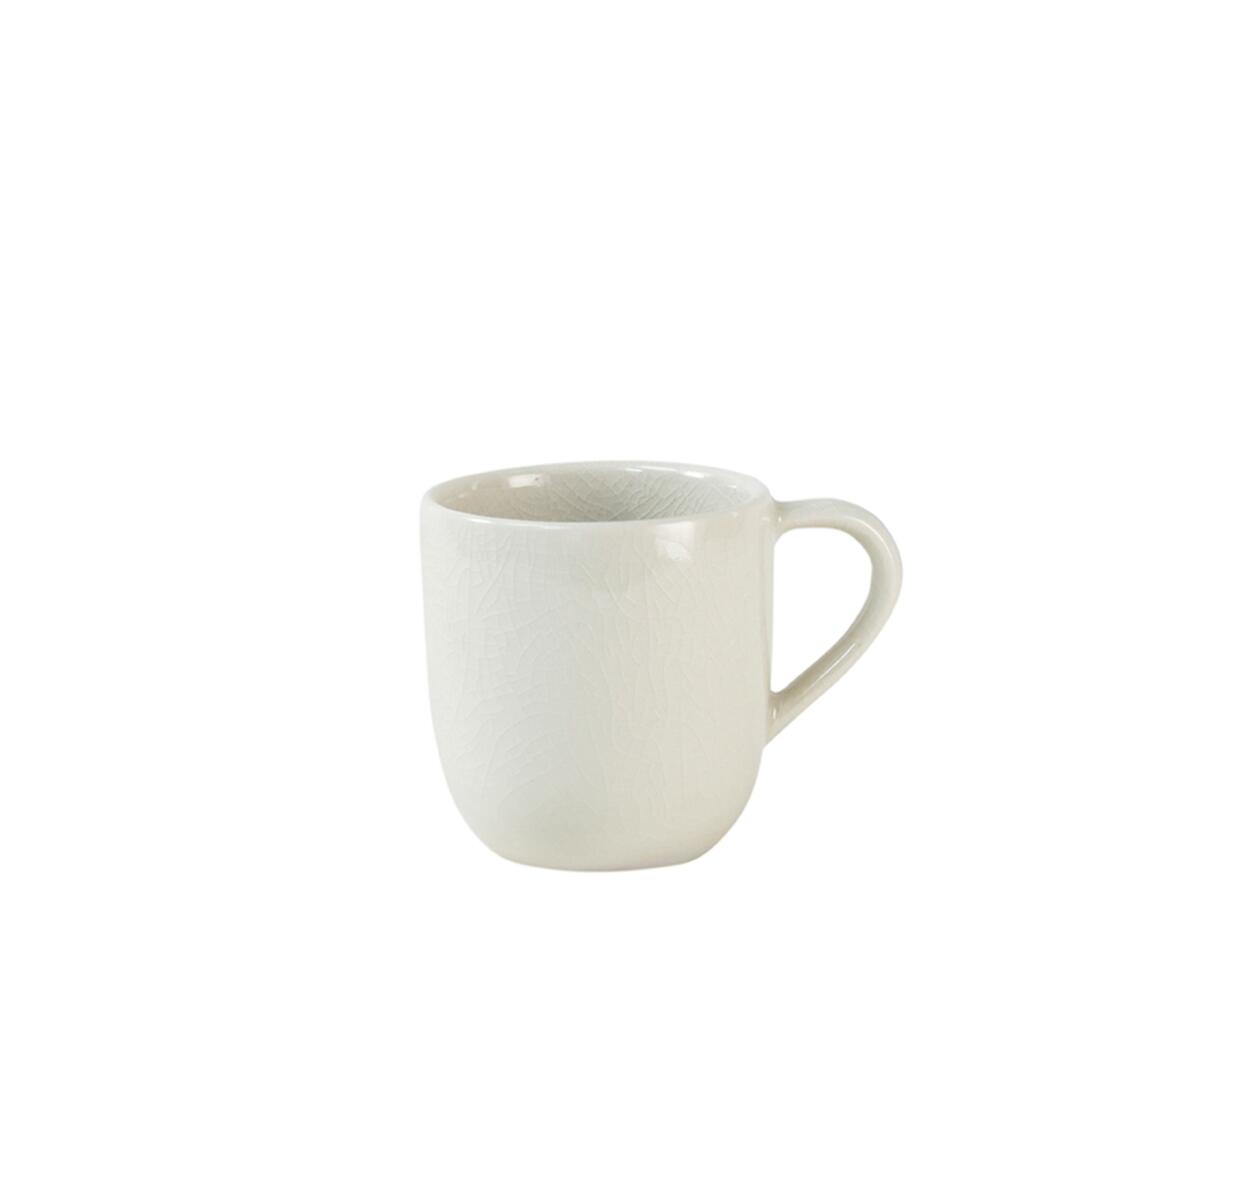 cup espresso maguelone quartz ceramic manufacturer